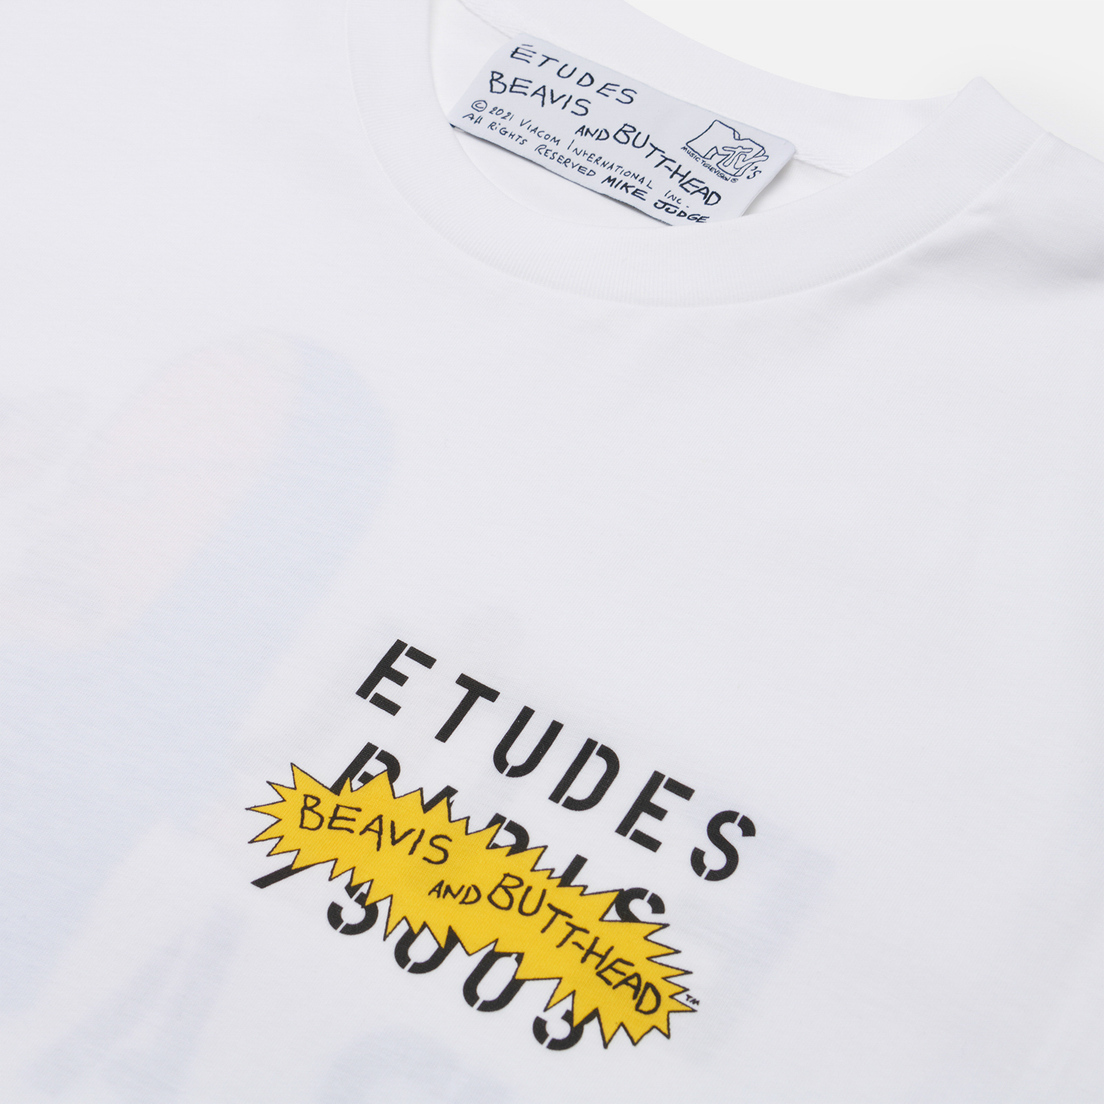 Etudes Мужская футболка x Beavis & Butt-Head Spirit Stencil